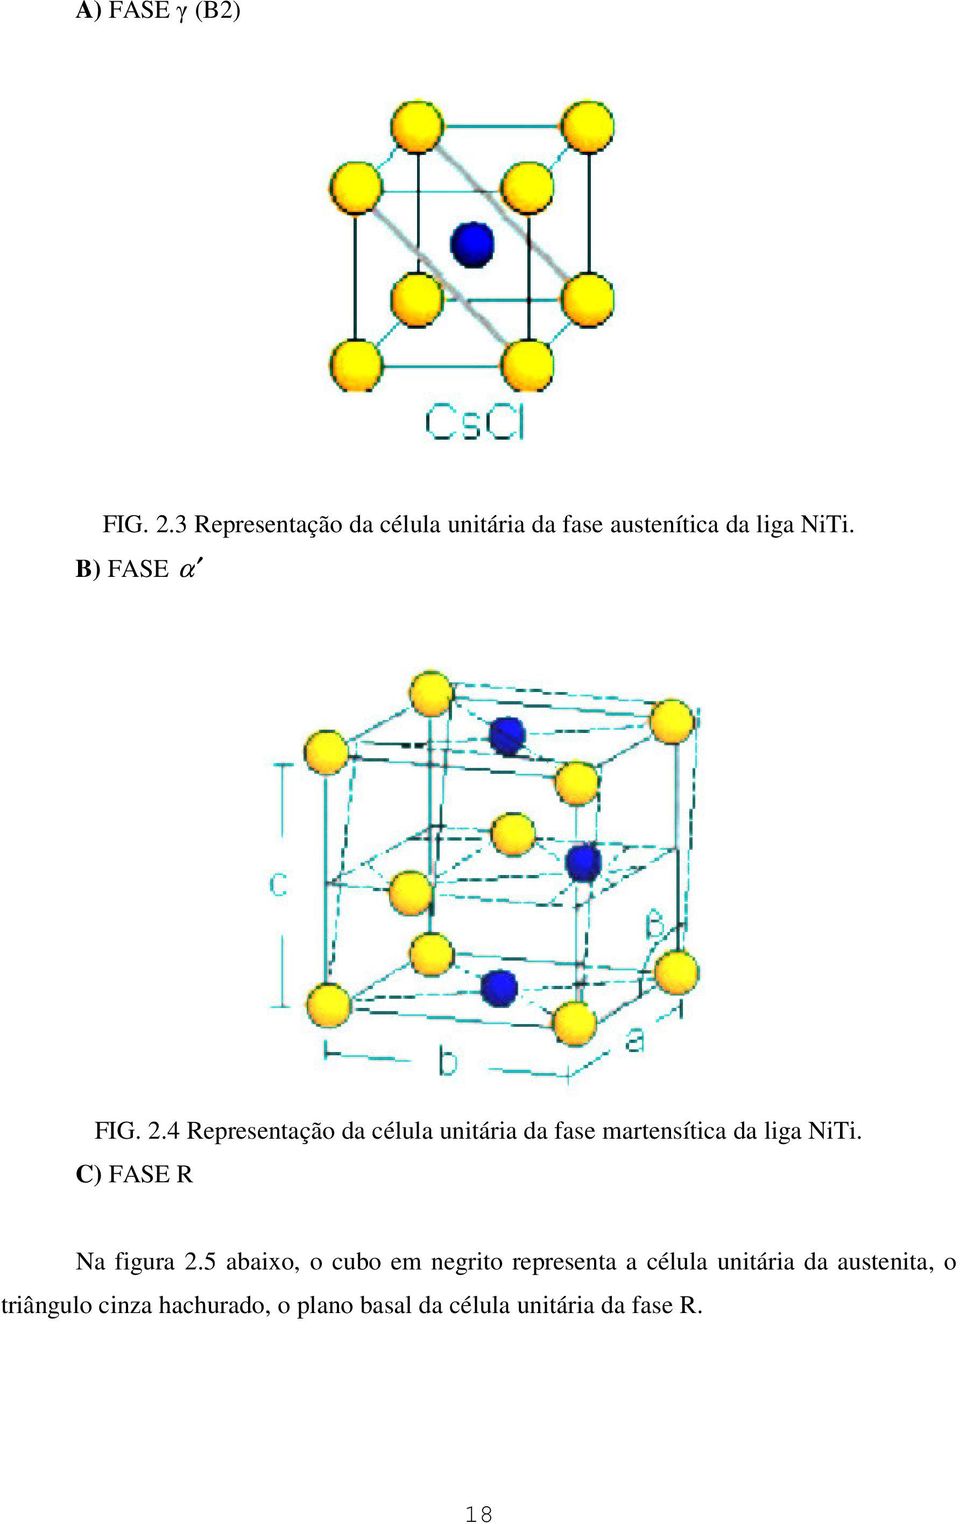 4 Representação da célula unitária da fase martensítica da liga NiTi.